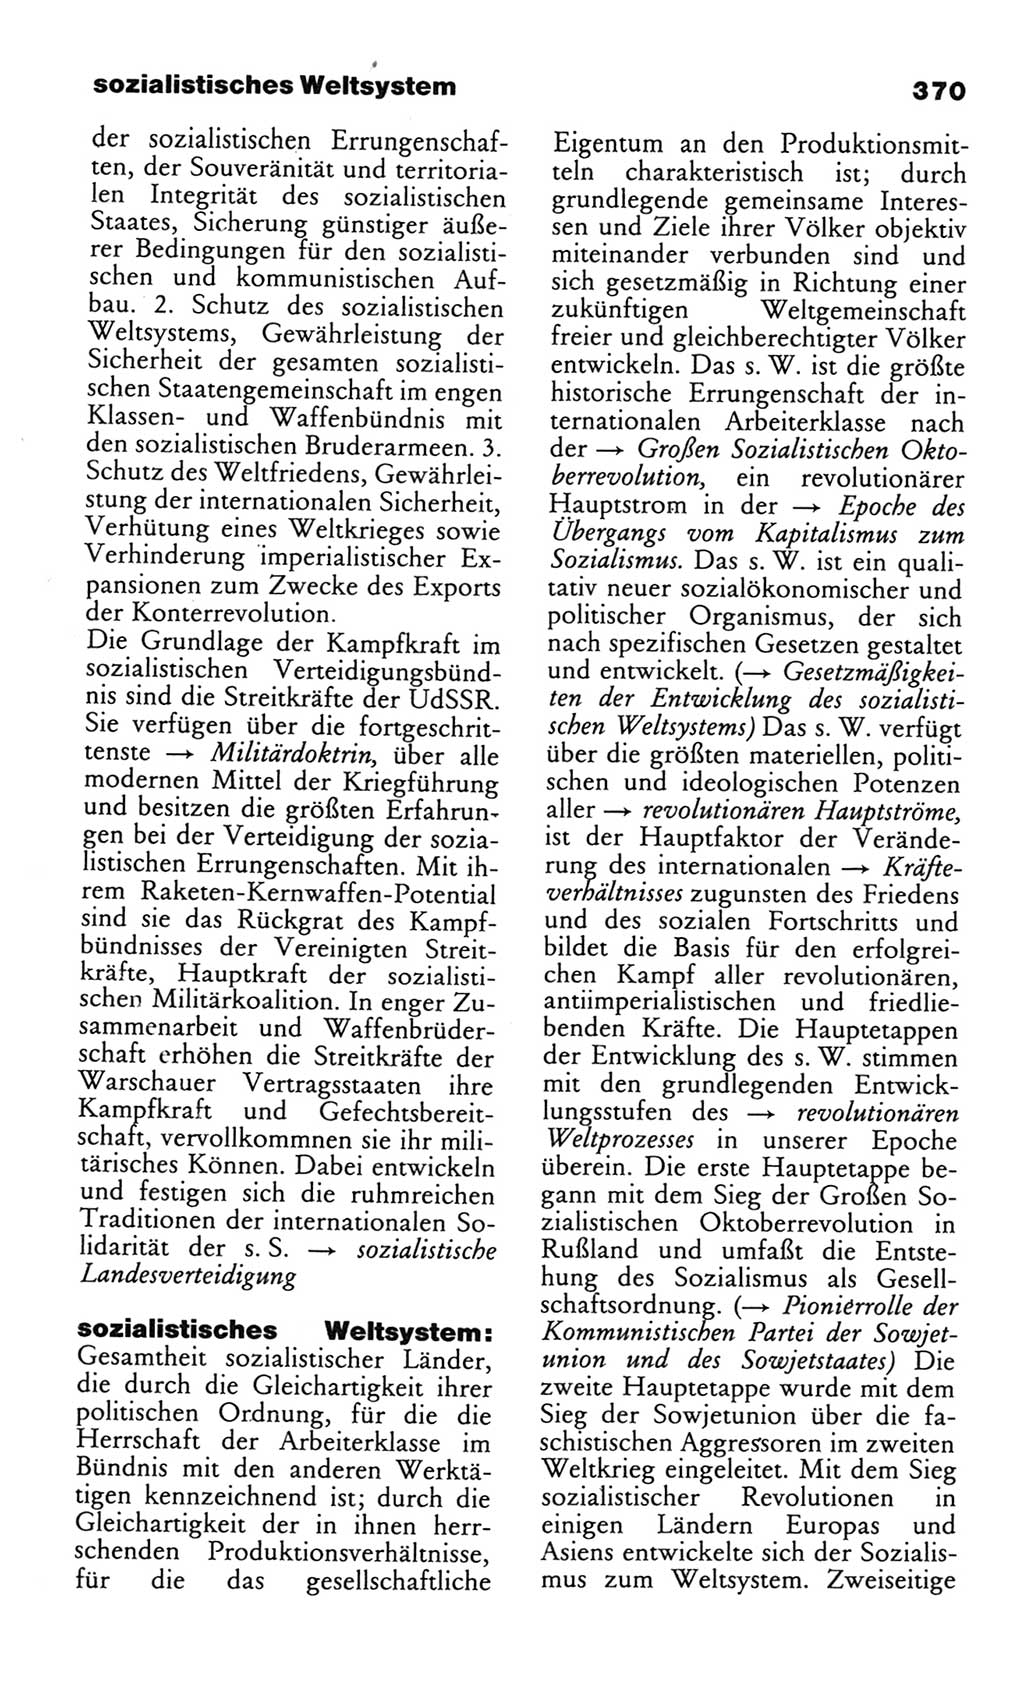 Wörterbuch des wissenschaftlichen Kommunismus [Deutsche Demokratische Republik (DDR)] 1982, Seite 370 (Wb. wiss. Komm. DDR 1982, S. 370)